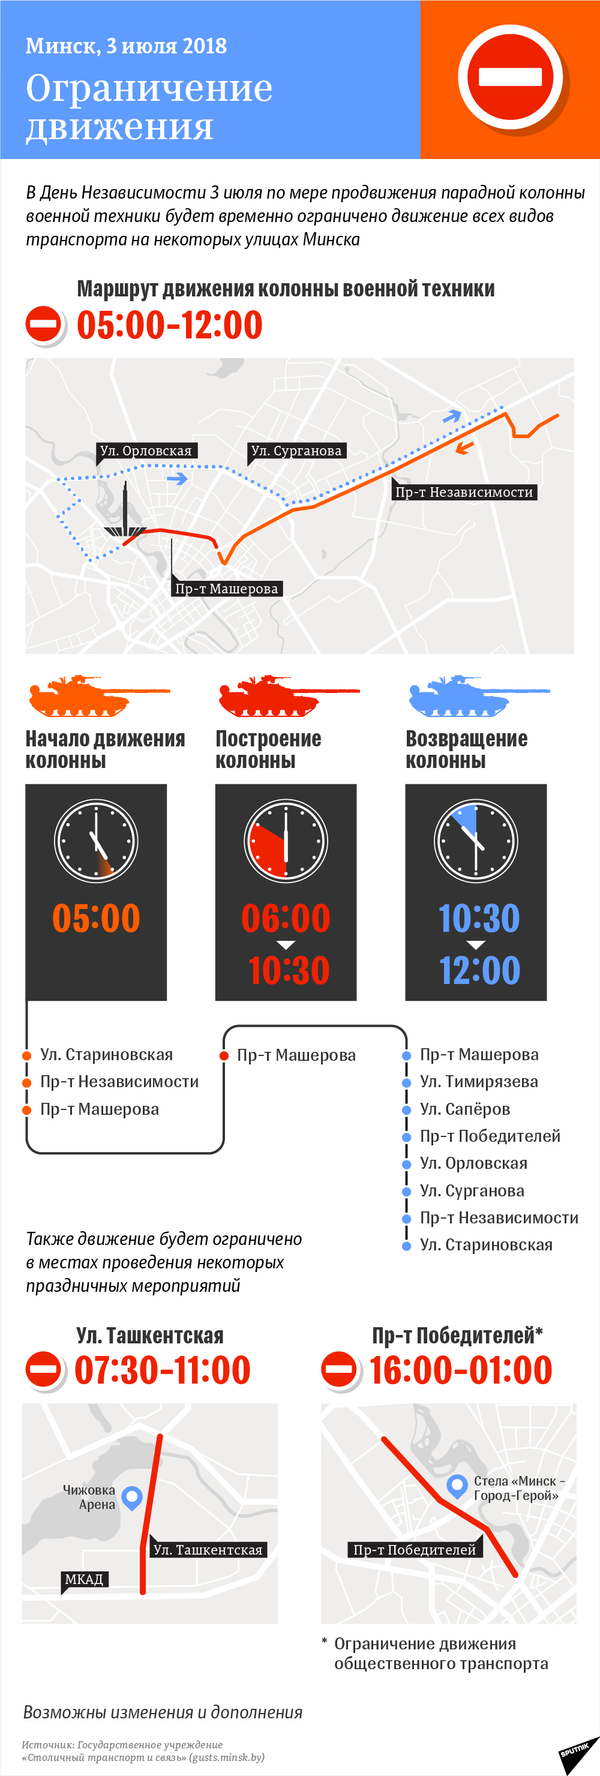 Ограничение движения транспорта в Минске 3 июля 2018 года – инфографика на sputnik.by - Sputnik Беларусь